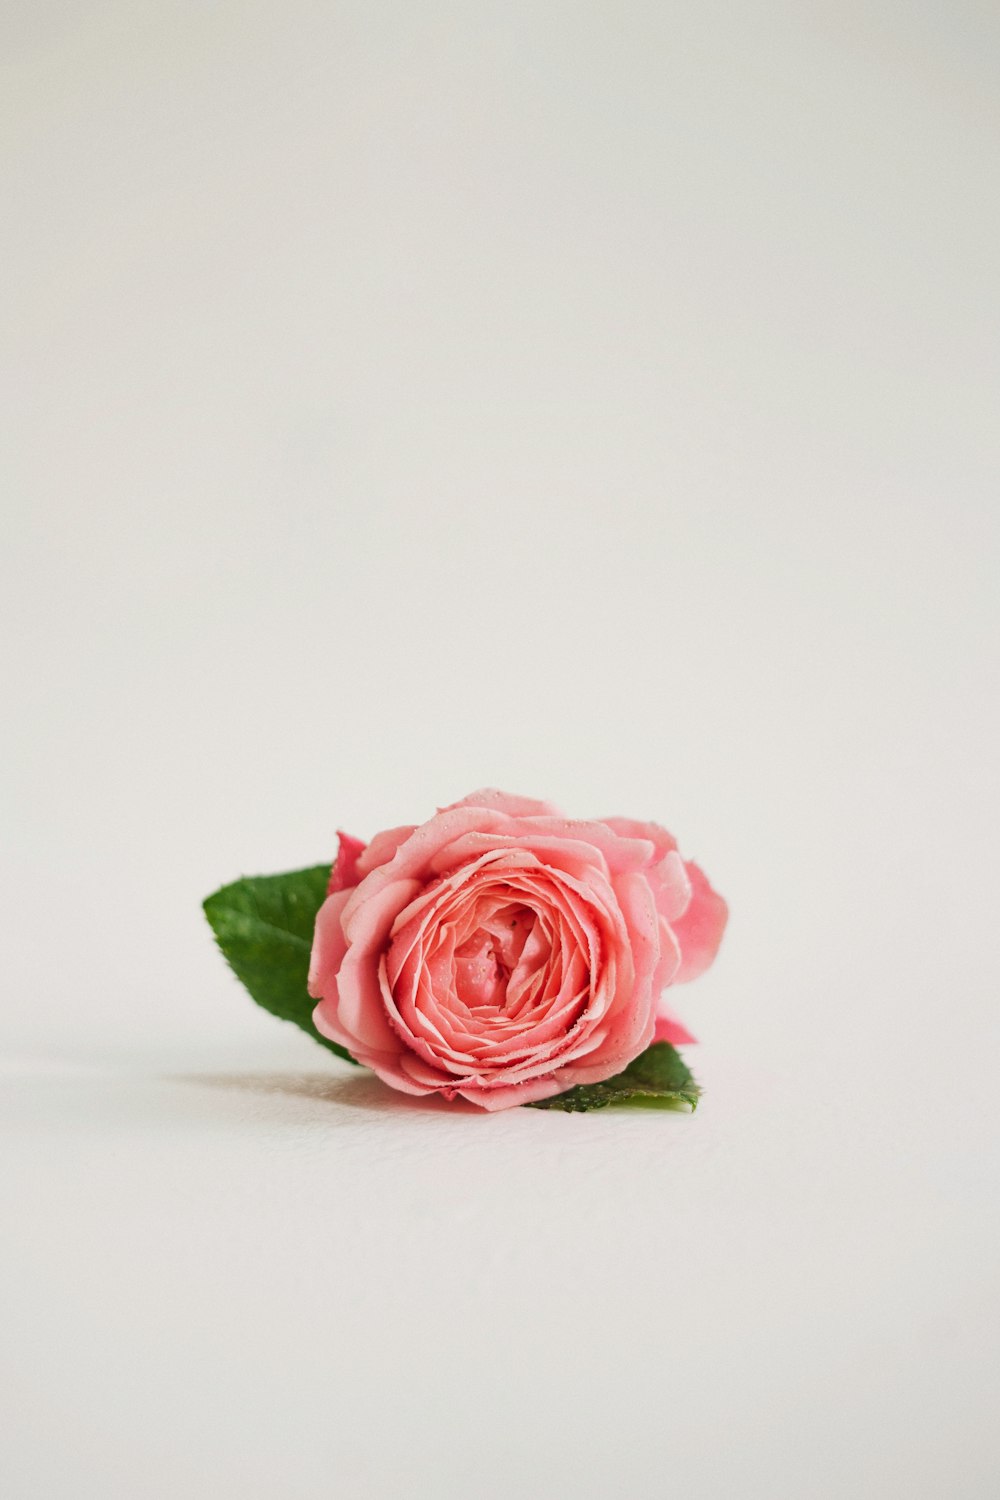 uma única rosa rosa em um fundo branco